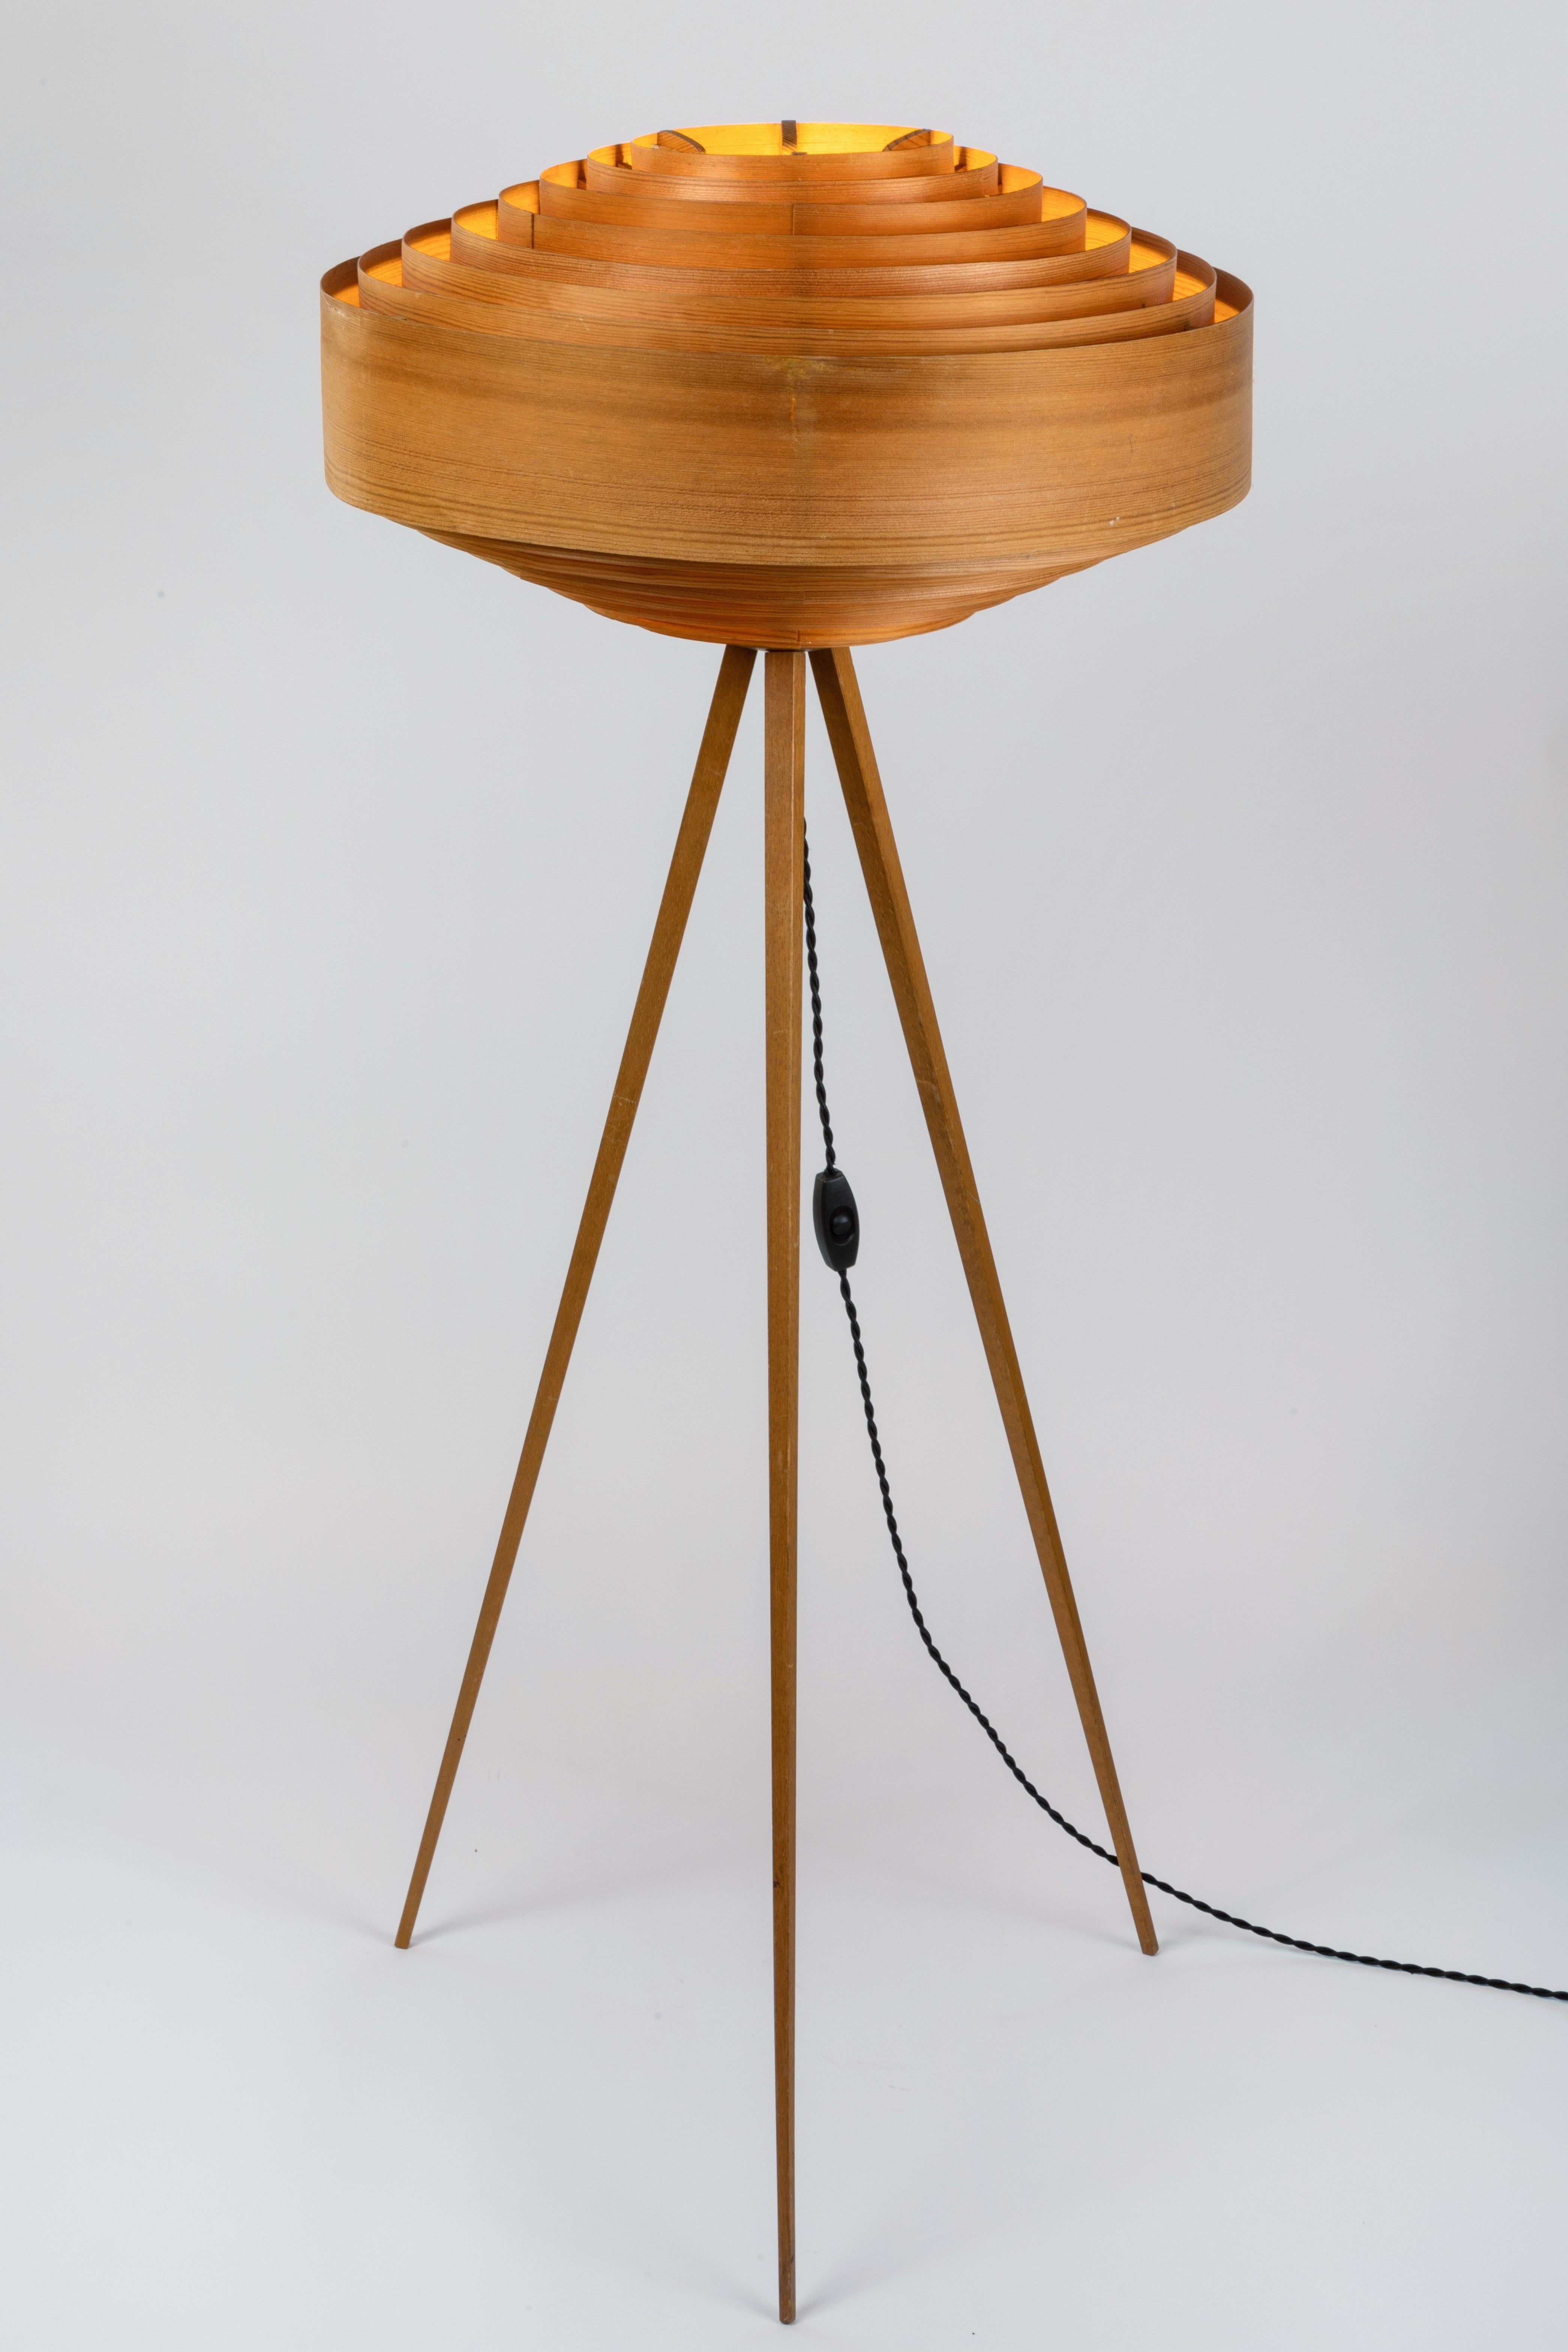 1960s Hans-Agne Jakobsson Wood Tripod Floor Lamp for AB Ellysett 6